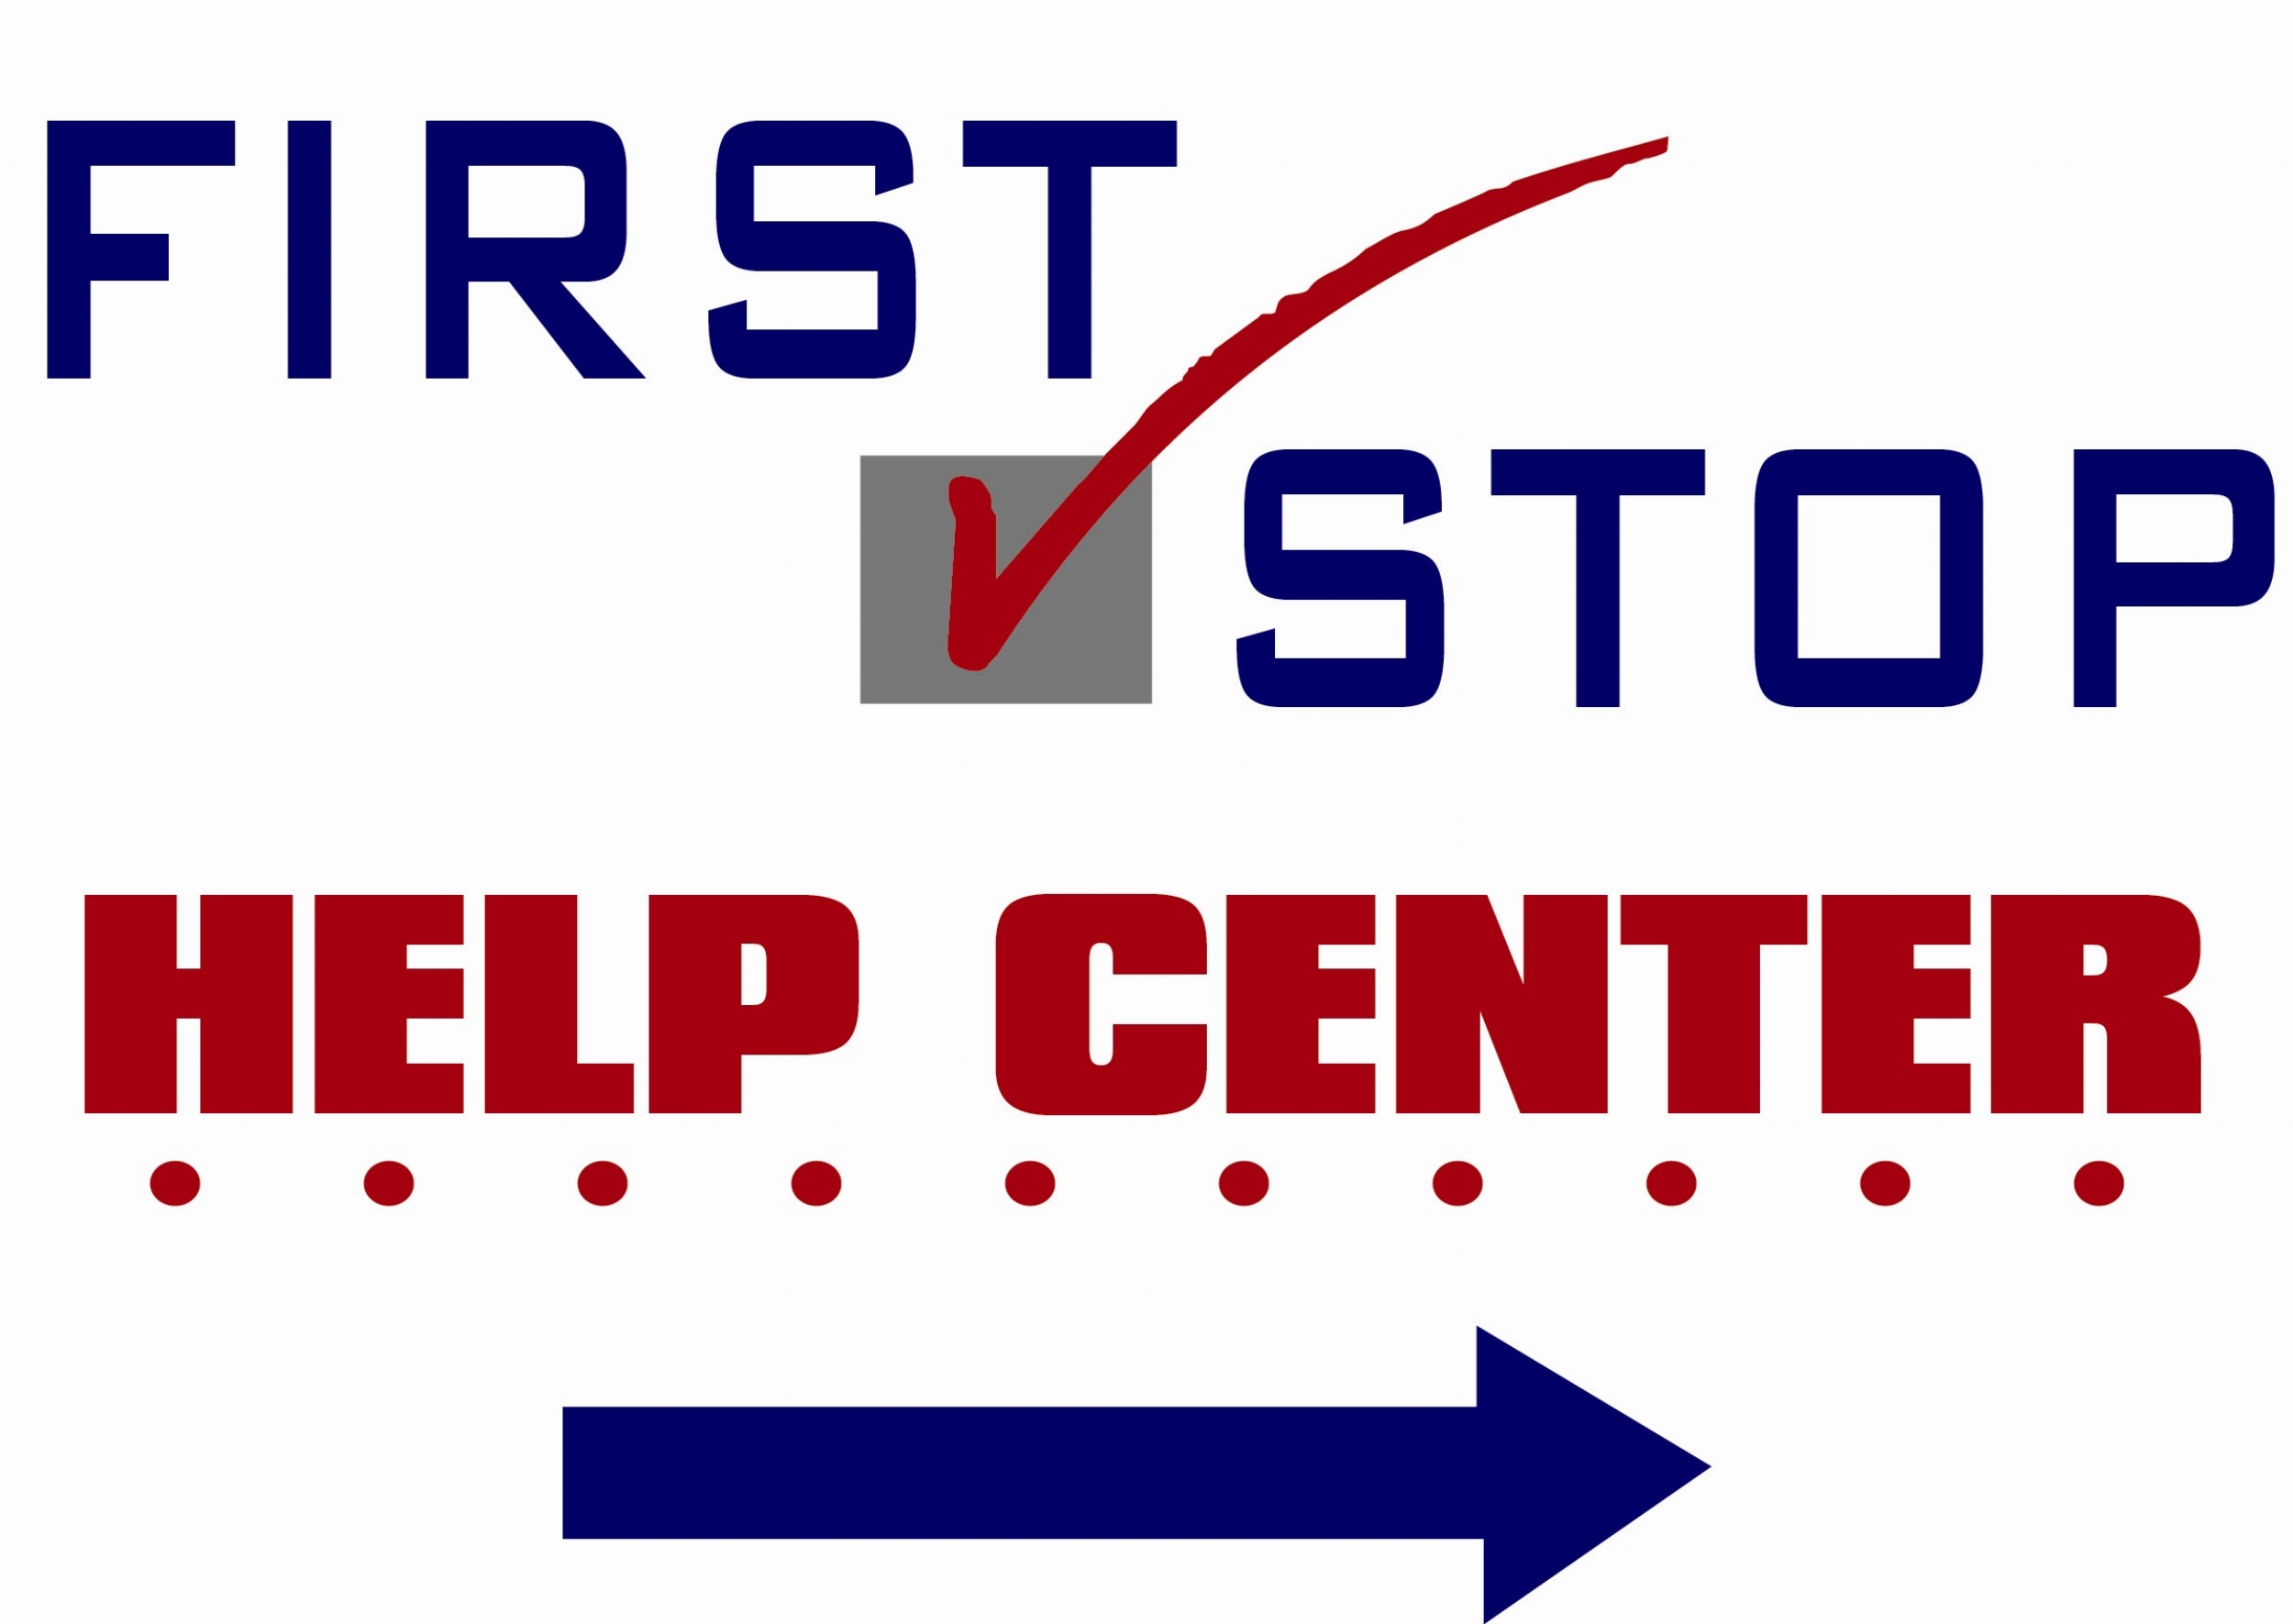 First Stop Help Center